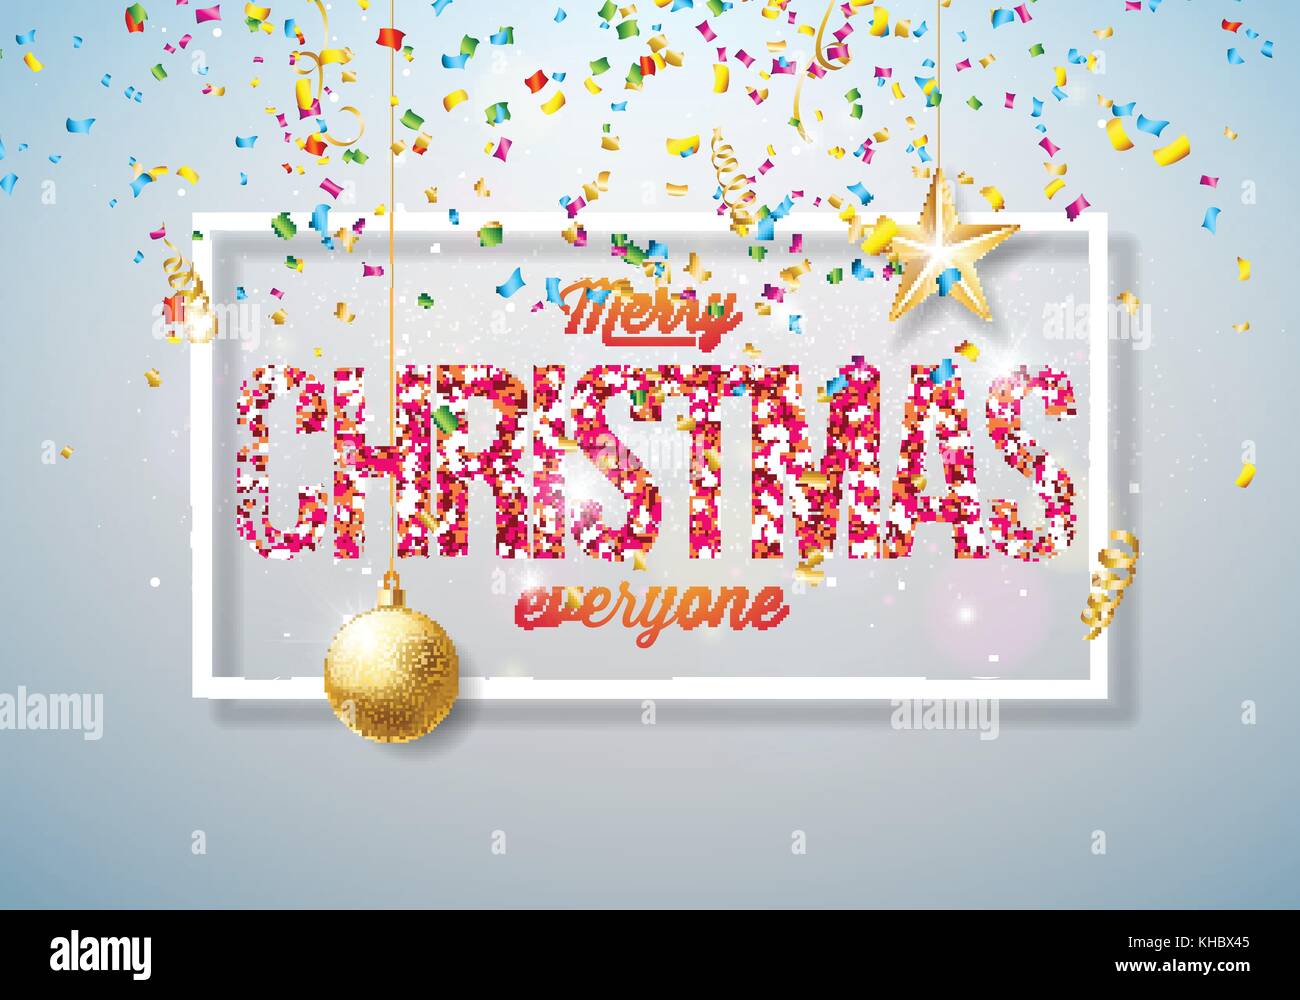 Vector Merry Christmas illustrazione sul lucido sfondo luminoso con la tipografia e elementi di vacanza. carta ritagliata stelle, coriandoli, serpentine e sfera ornamentali. Illustrazione Vettoriale